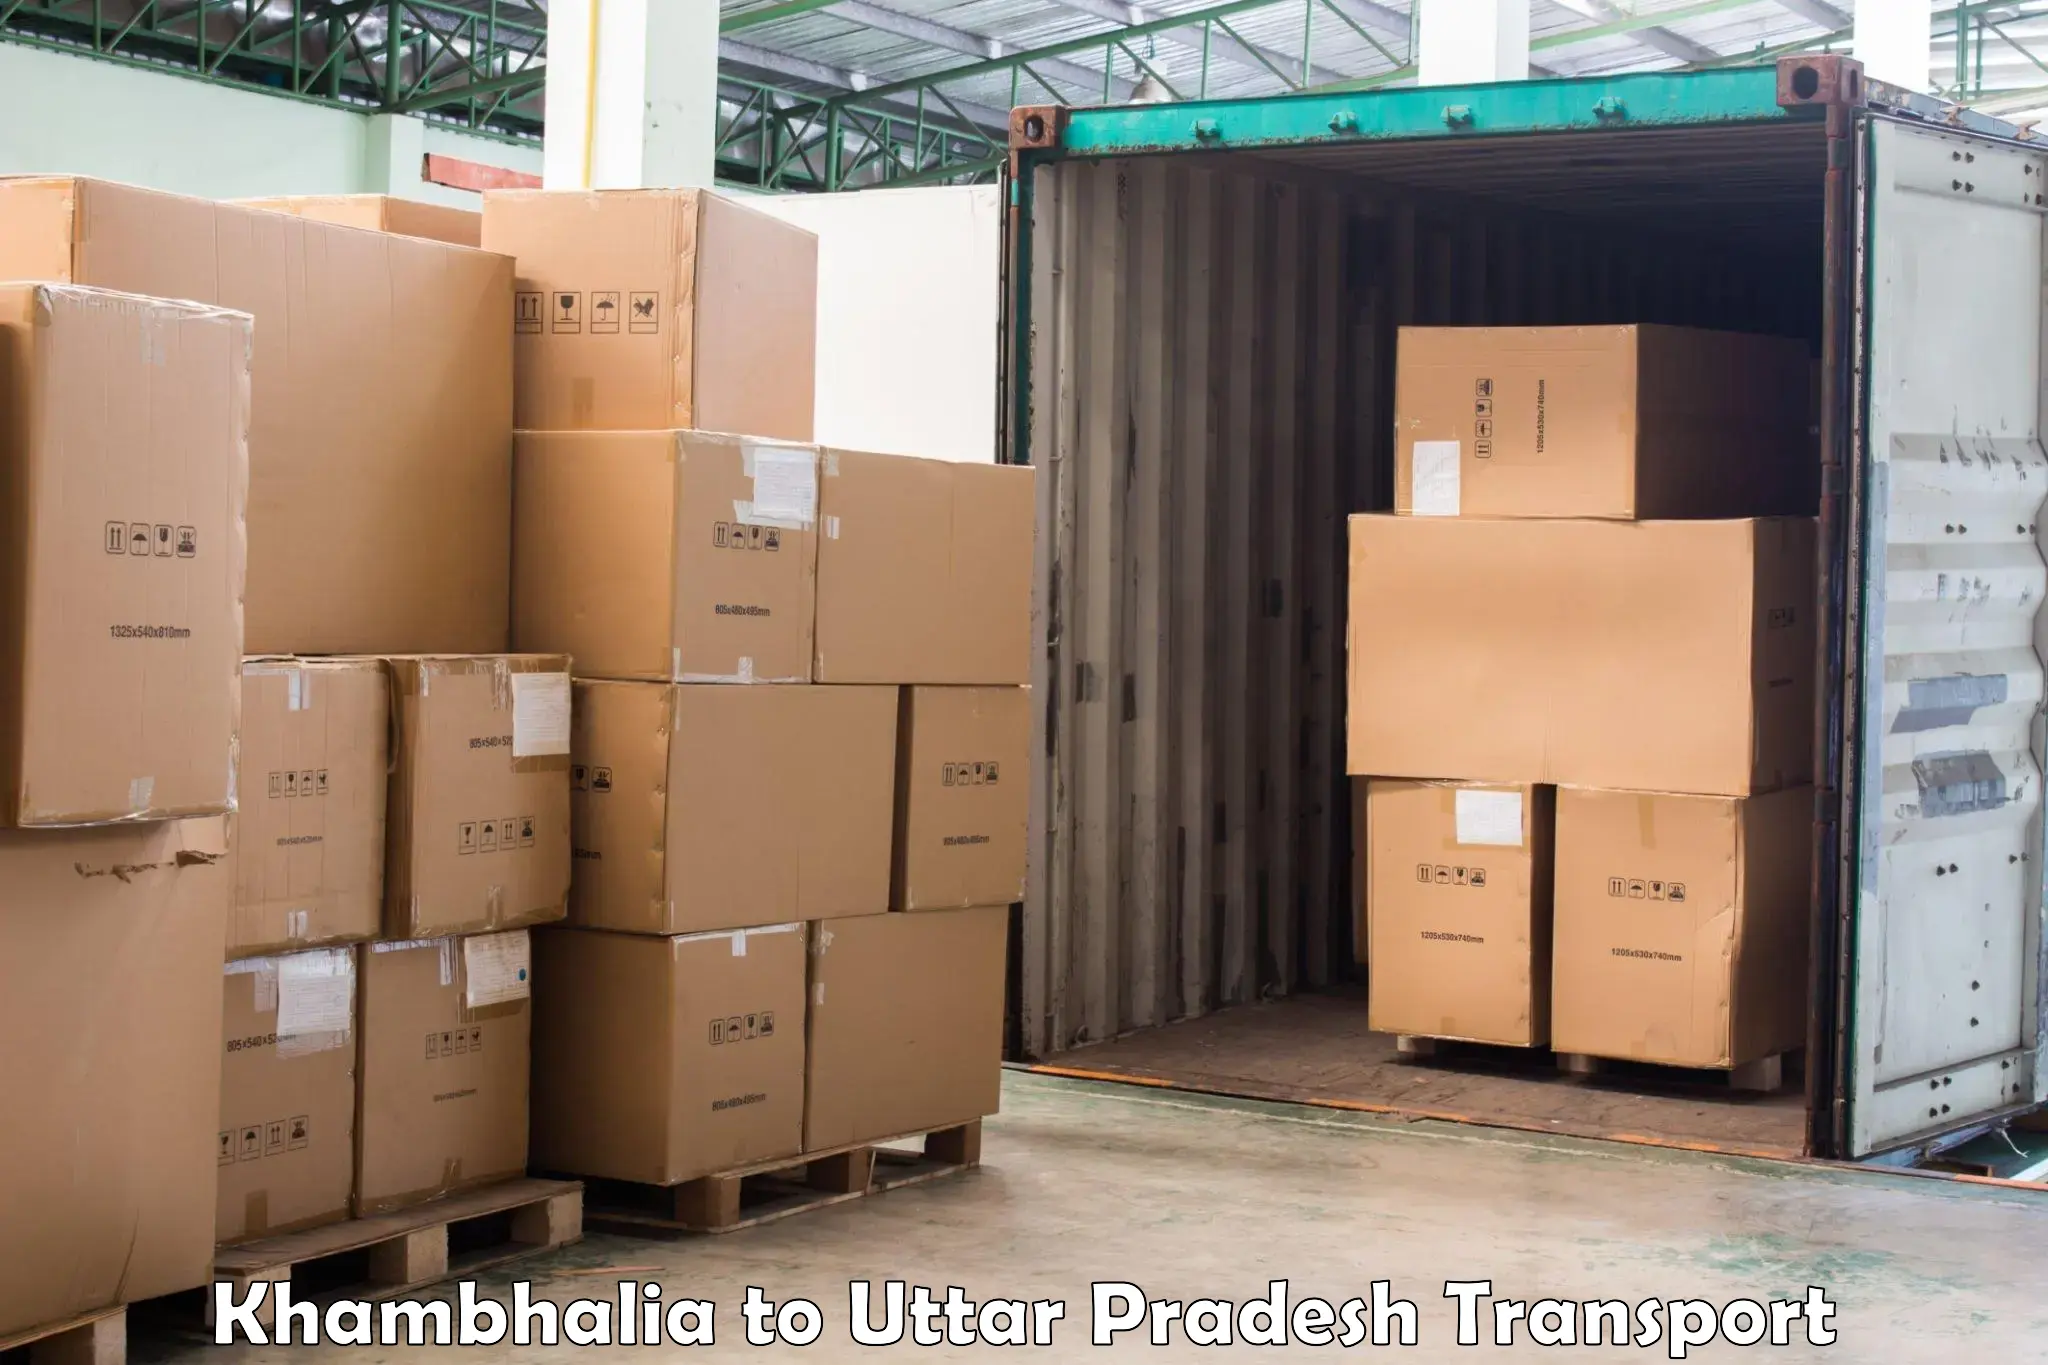 Truck transport companies in India Khambhalia to Bisalpur